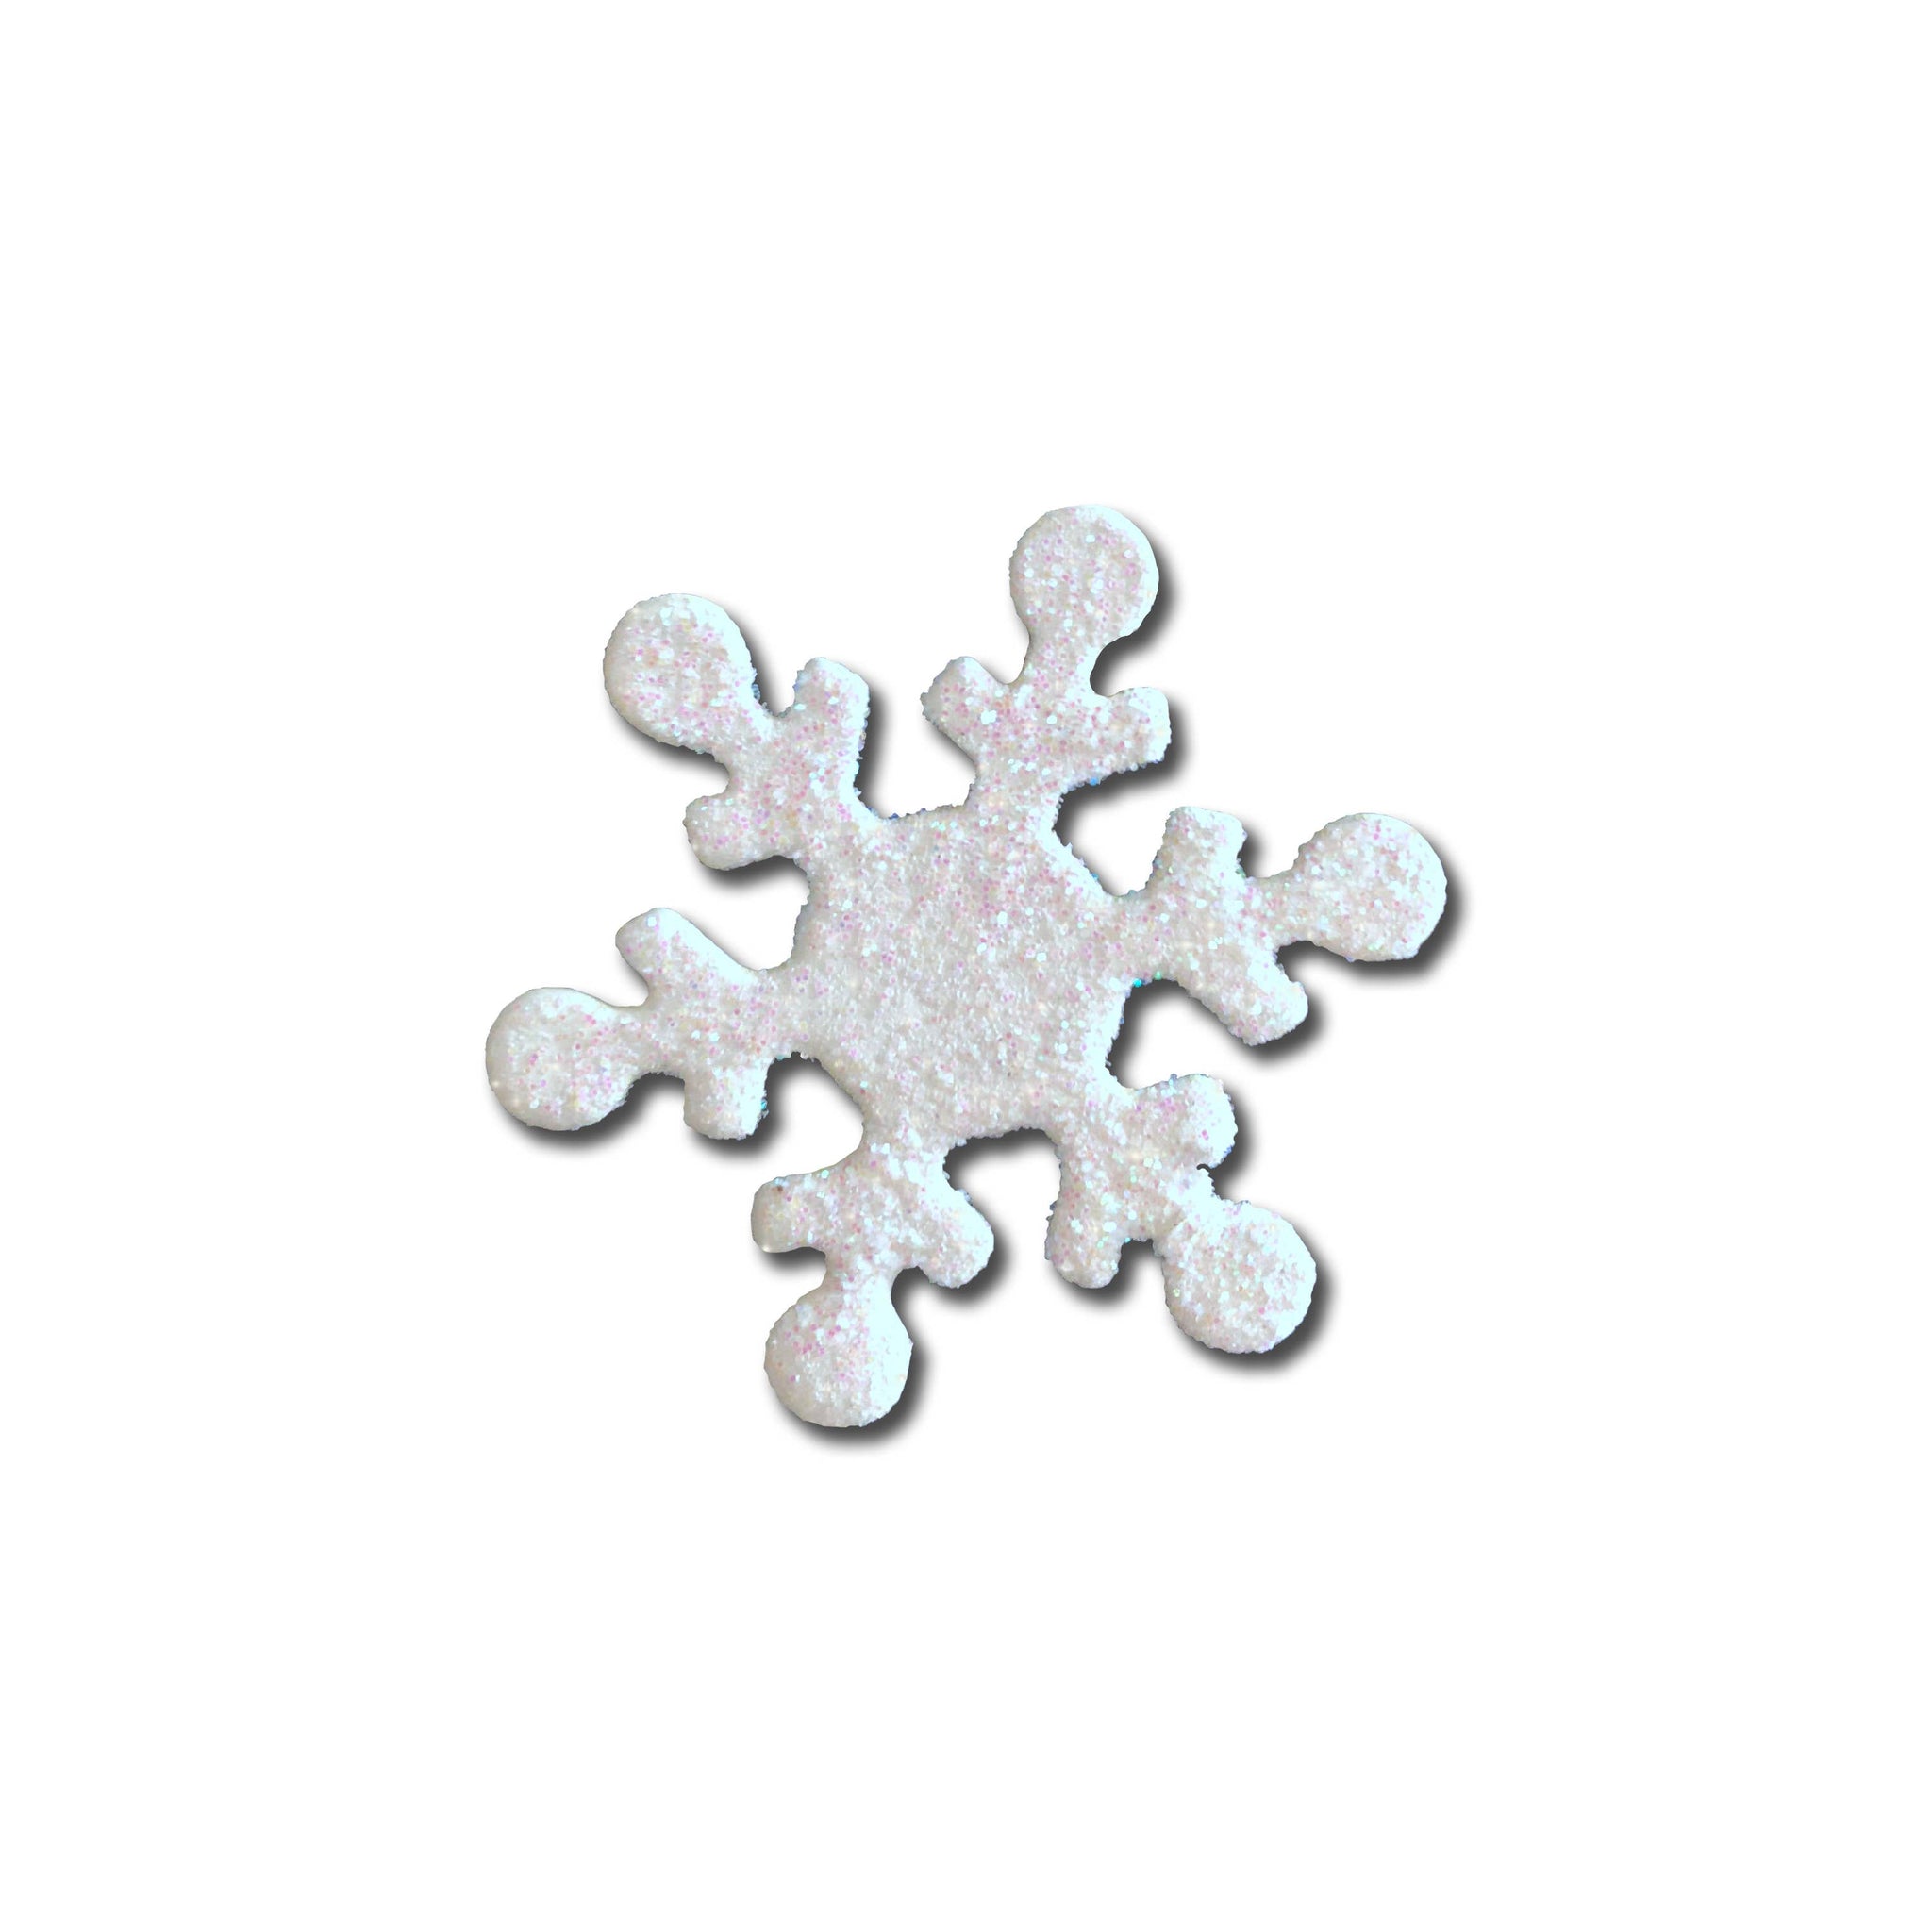 Snowflake Open Stock Magnet White Glitter